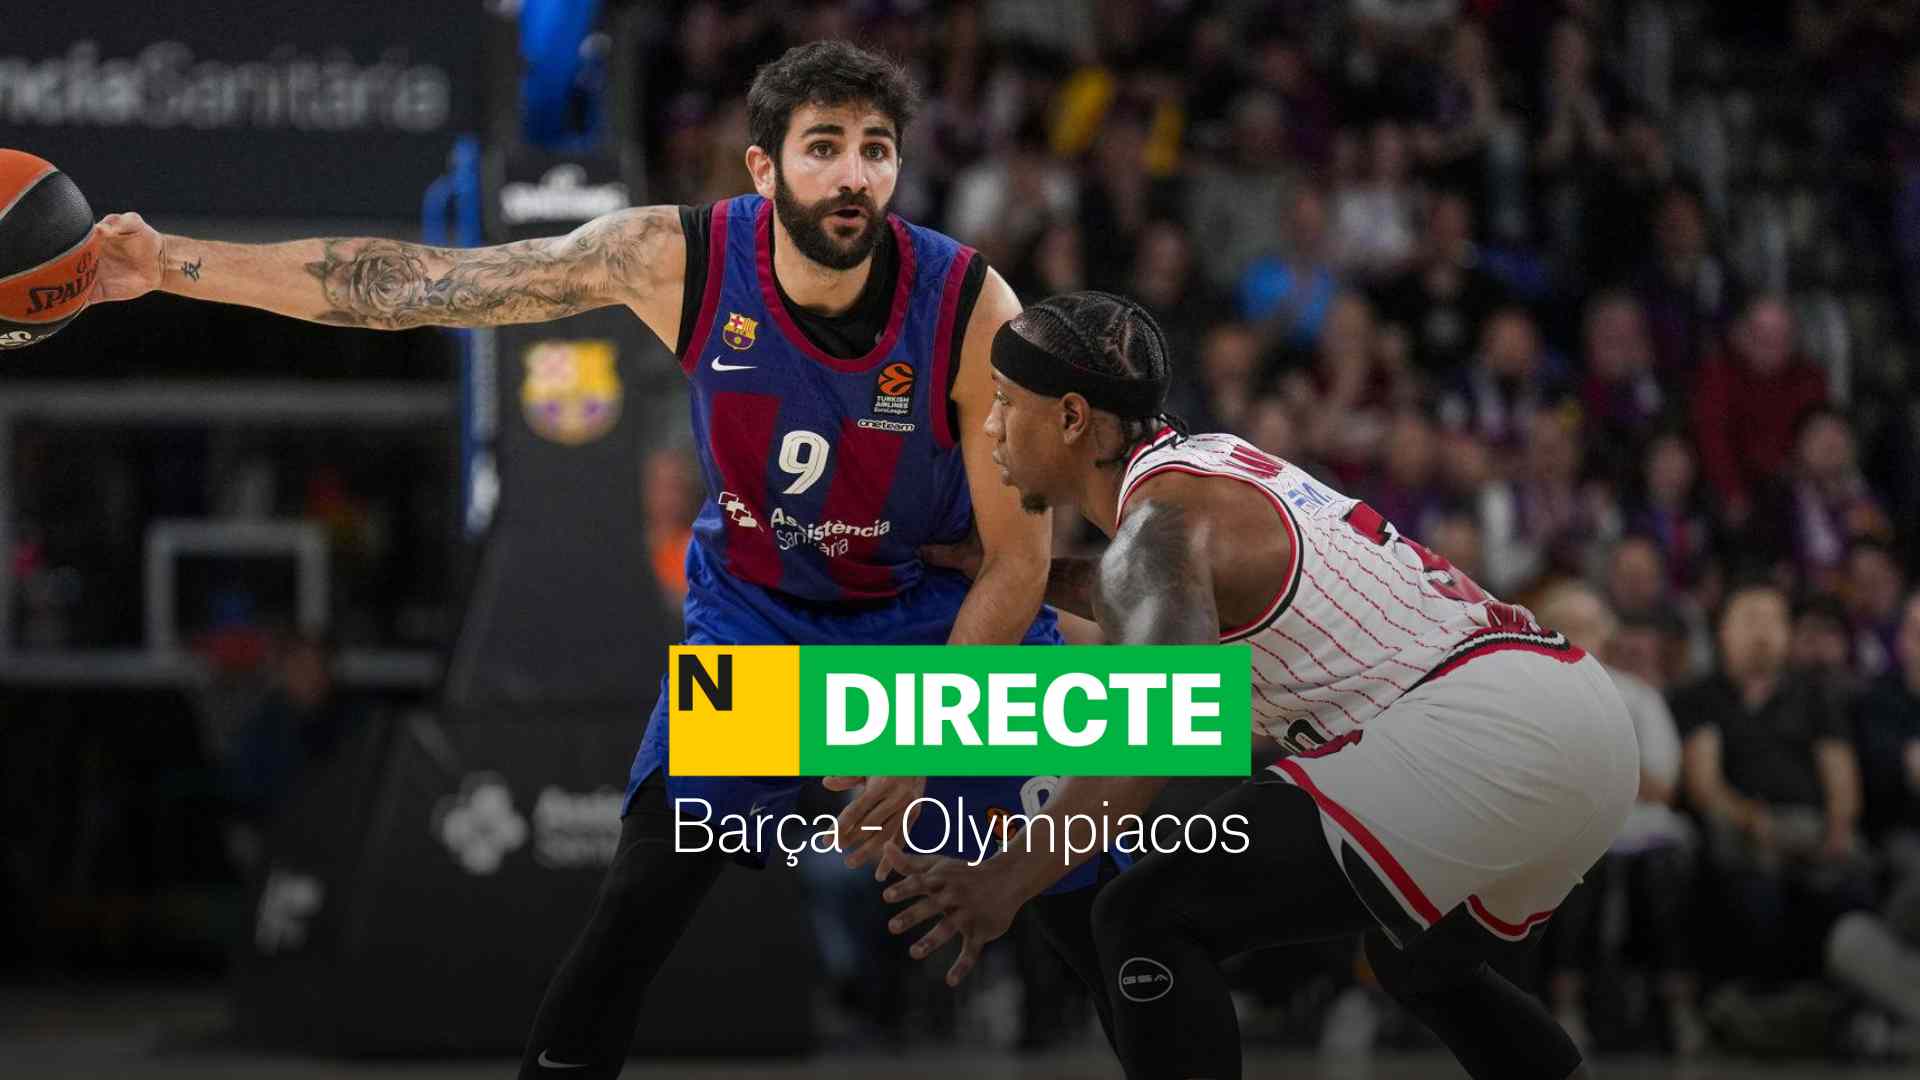 Barça - Olympiacos de la Euroliga de baloncesto, DIRECTO |Resultado y resumen